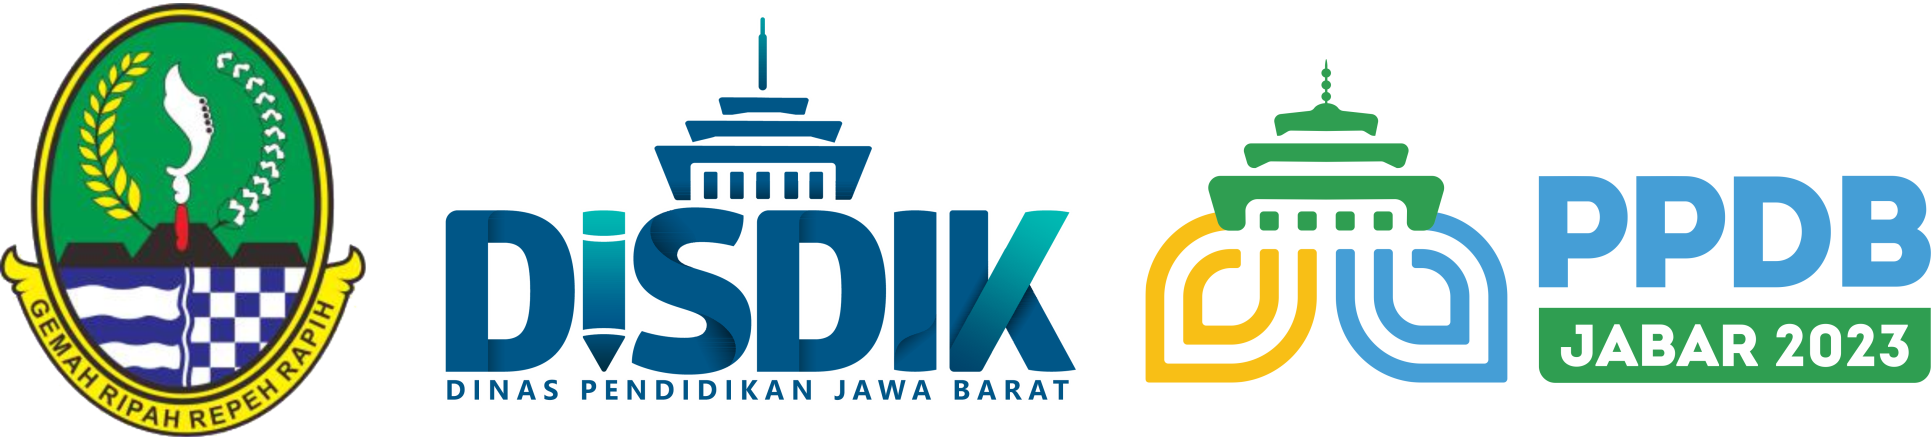 logo-ppdb